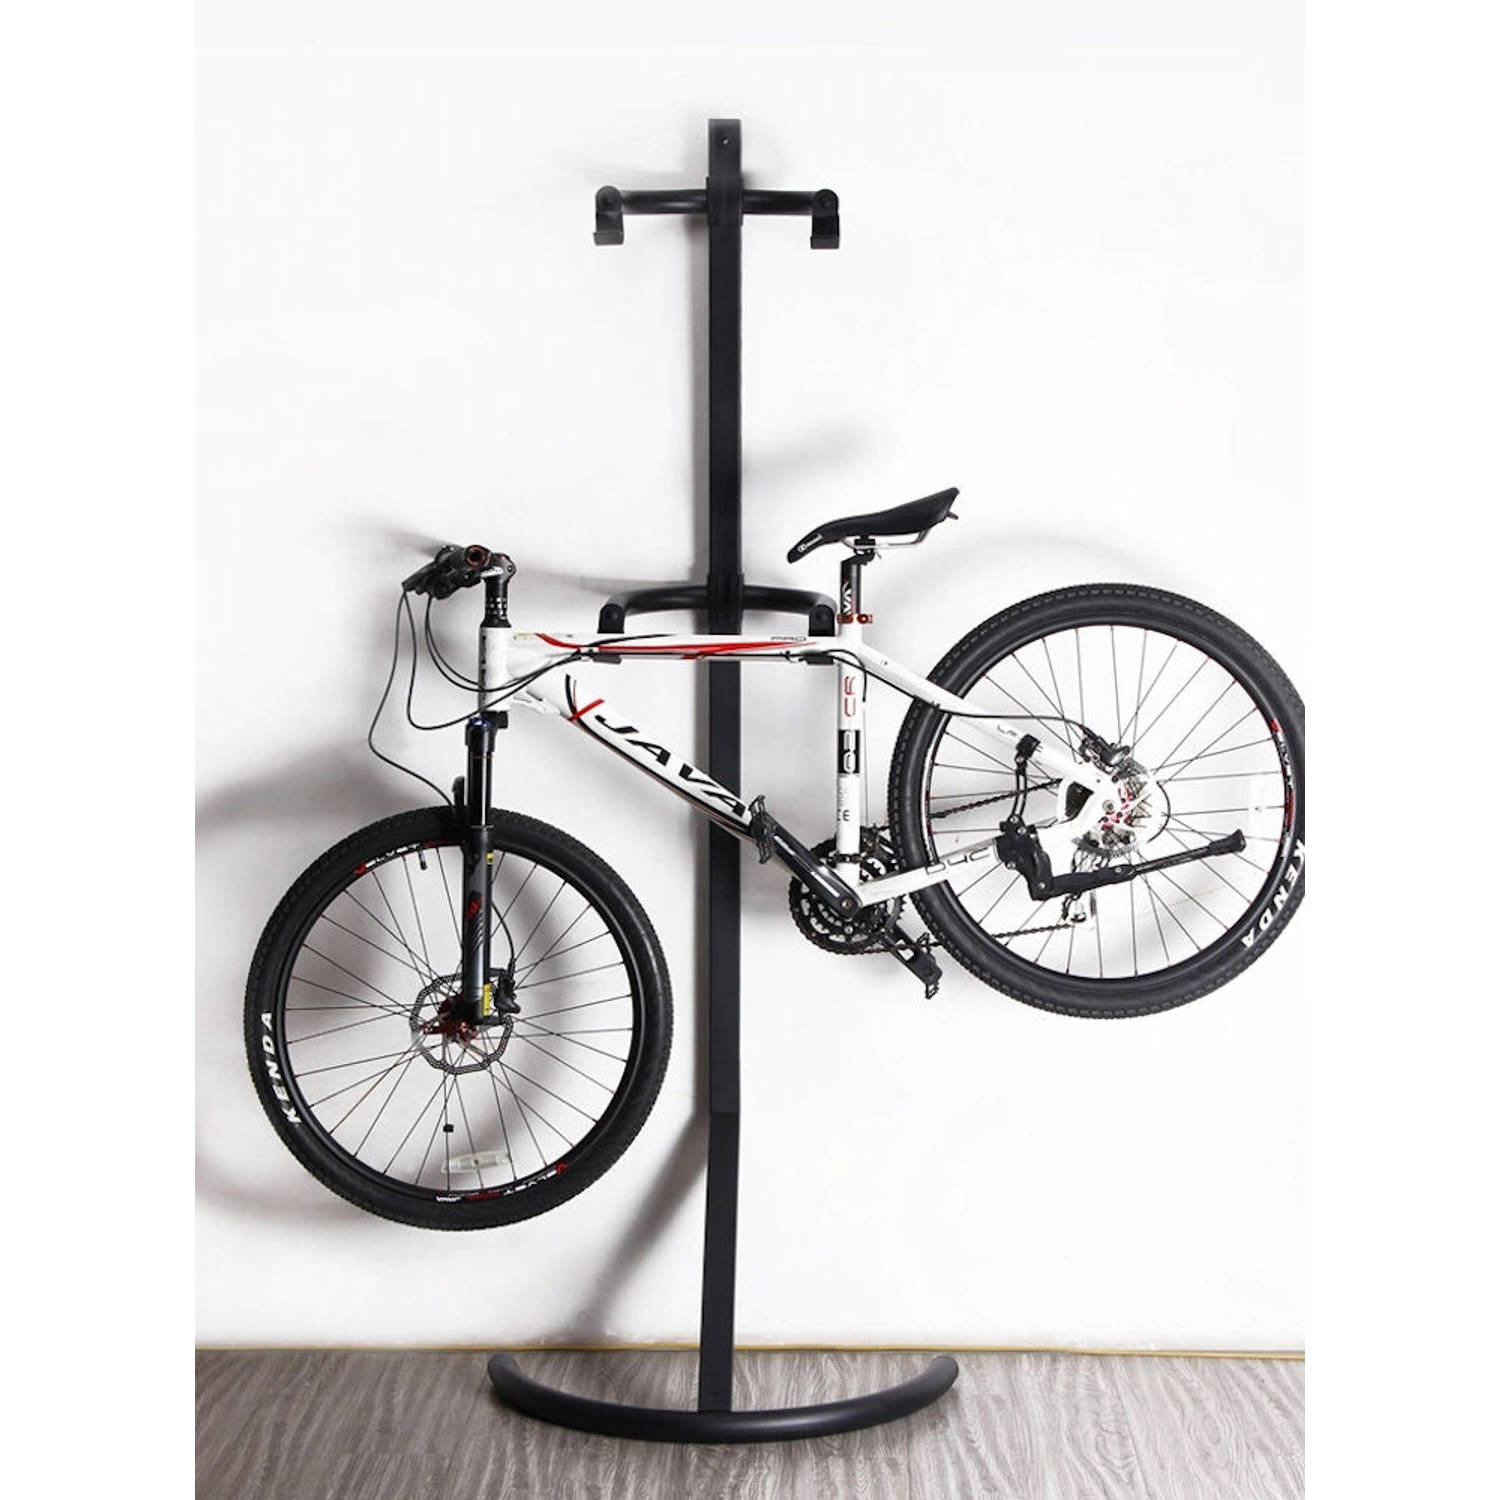 Sterk Staand Fietsenrek om 2 fietsen op hangen Eenvoudig Compact | Blokker